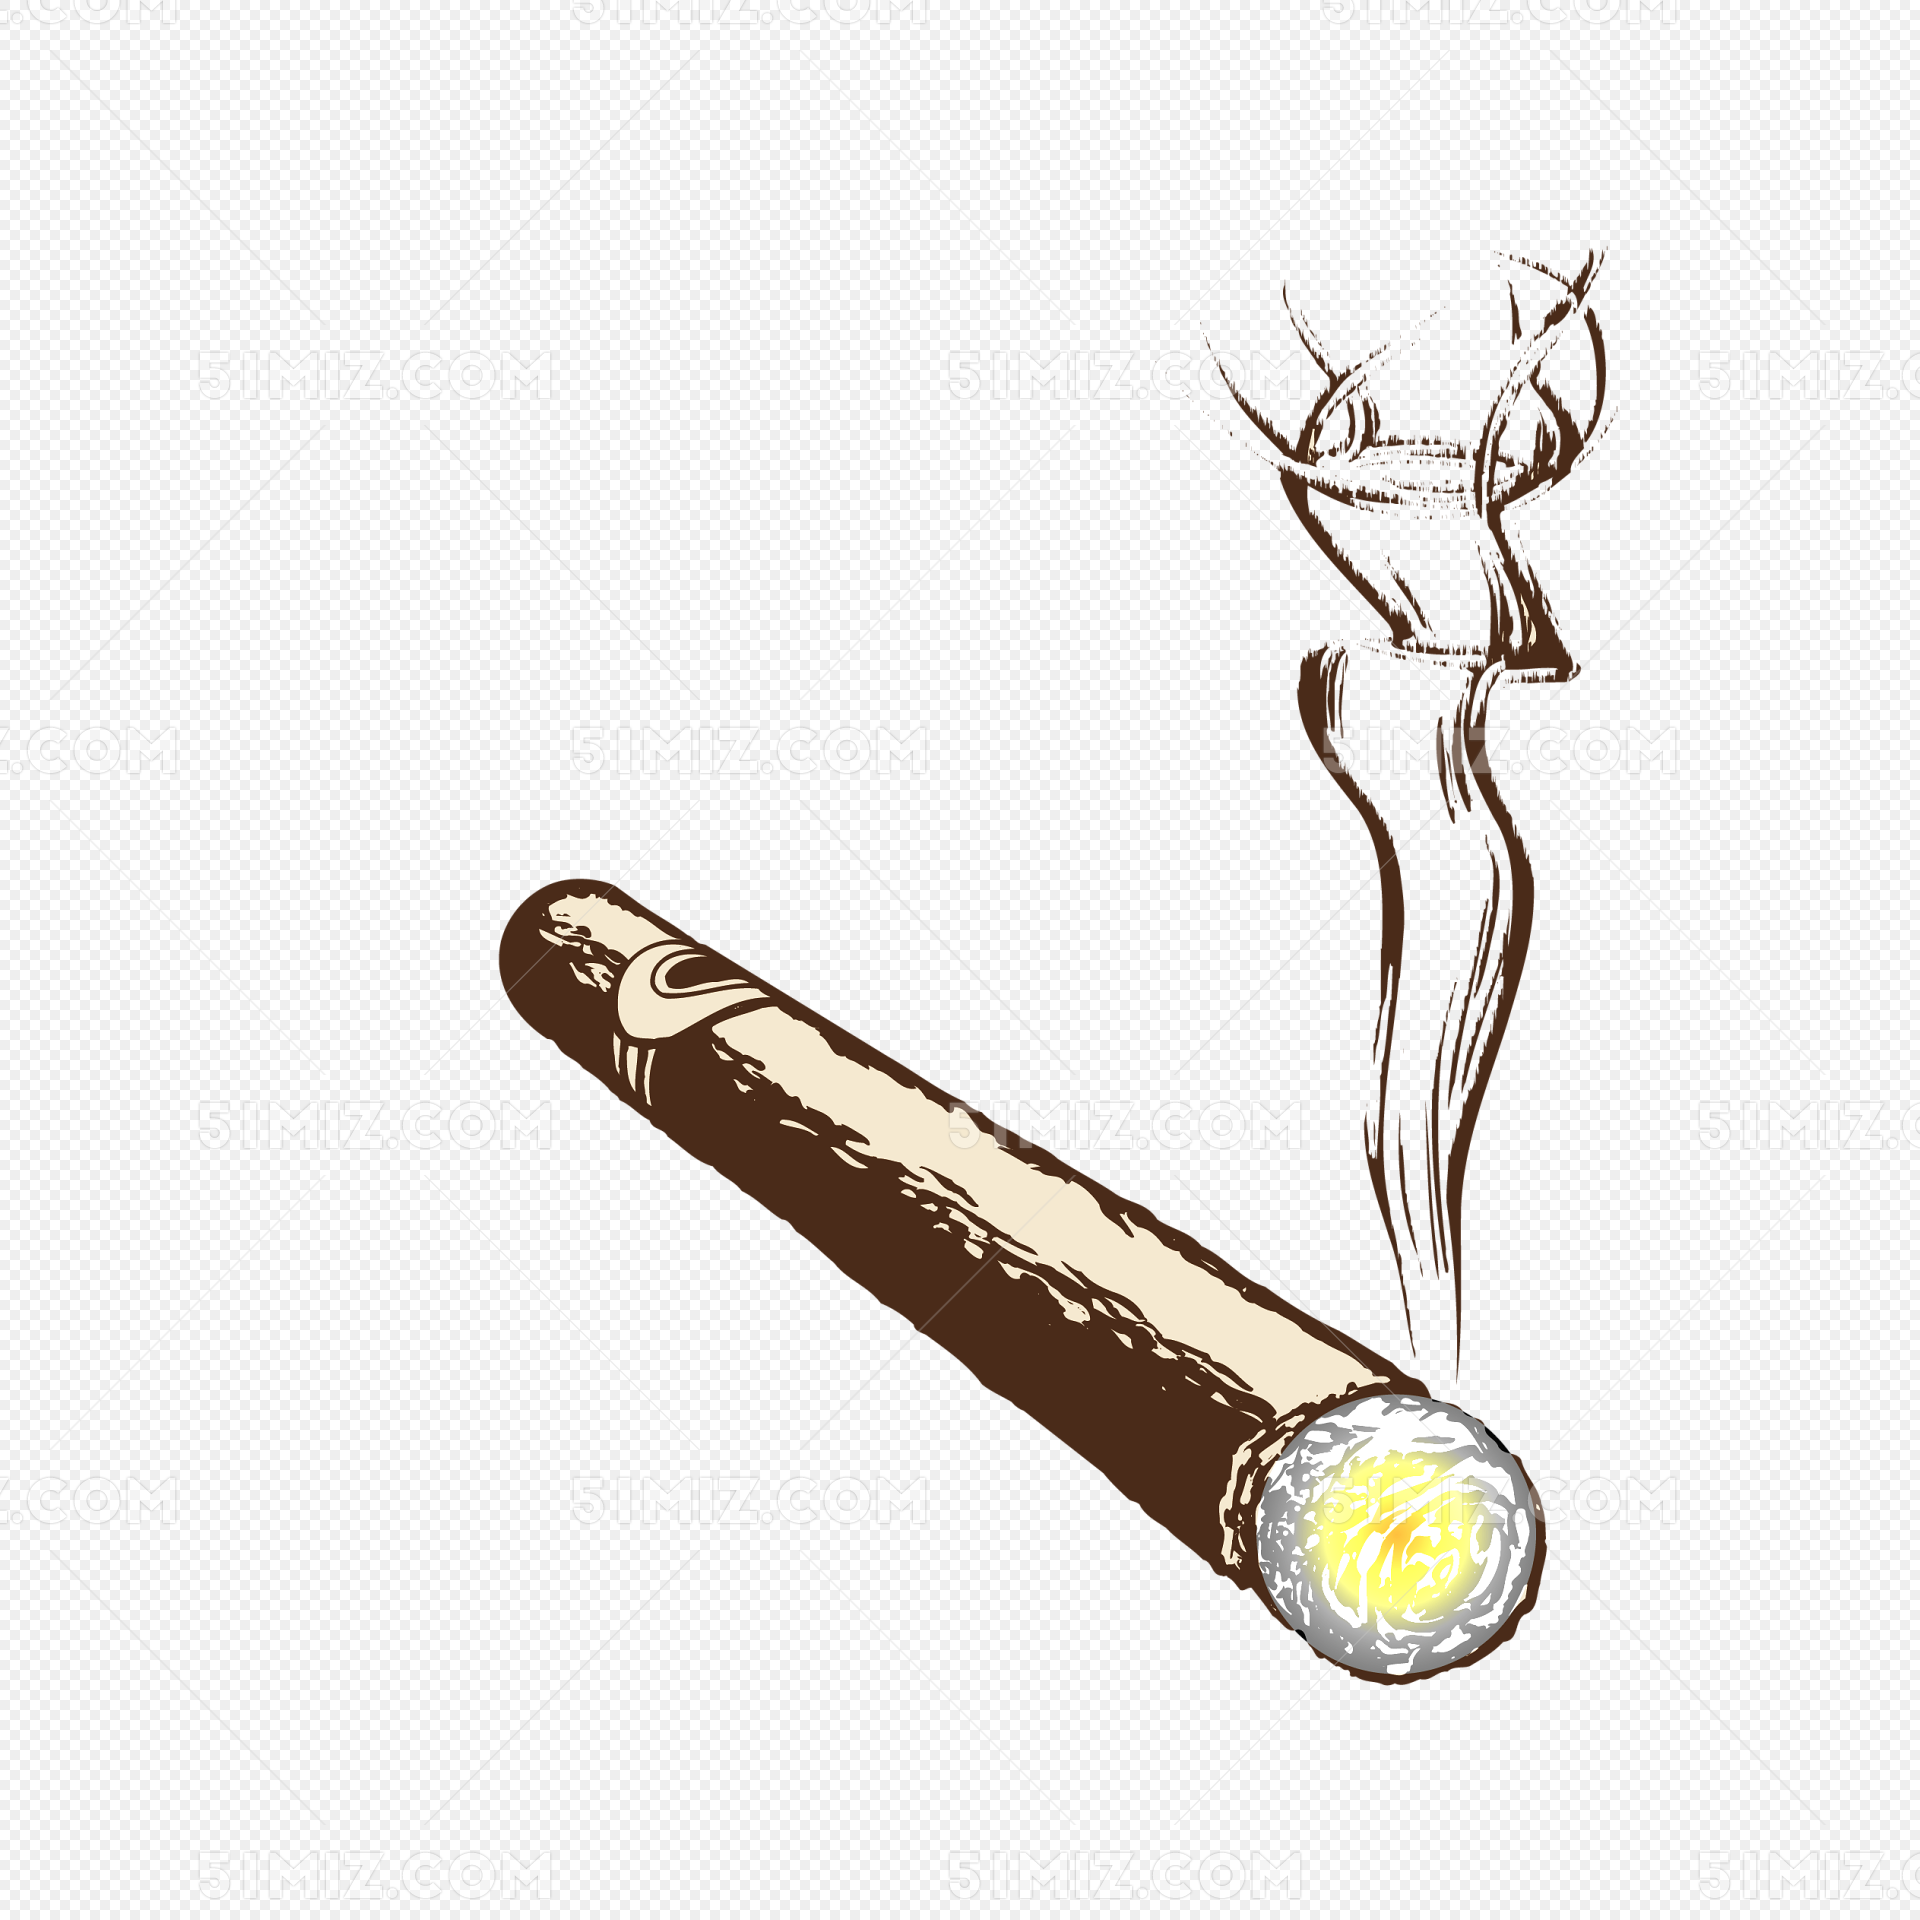 世界无烟日冒烟的香烟高清摄影大图-千库网